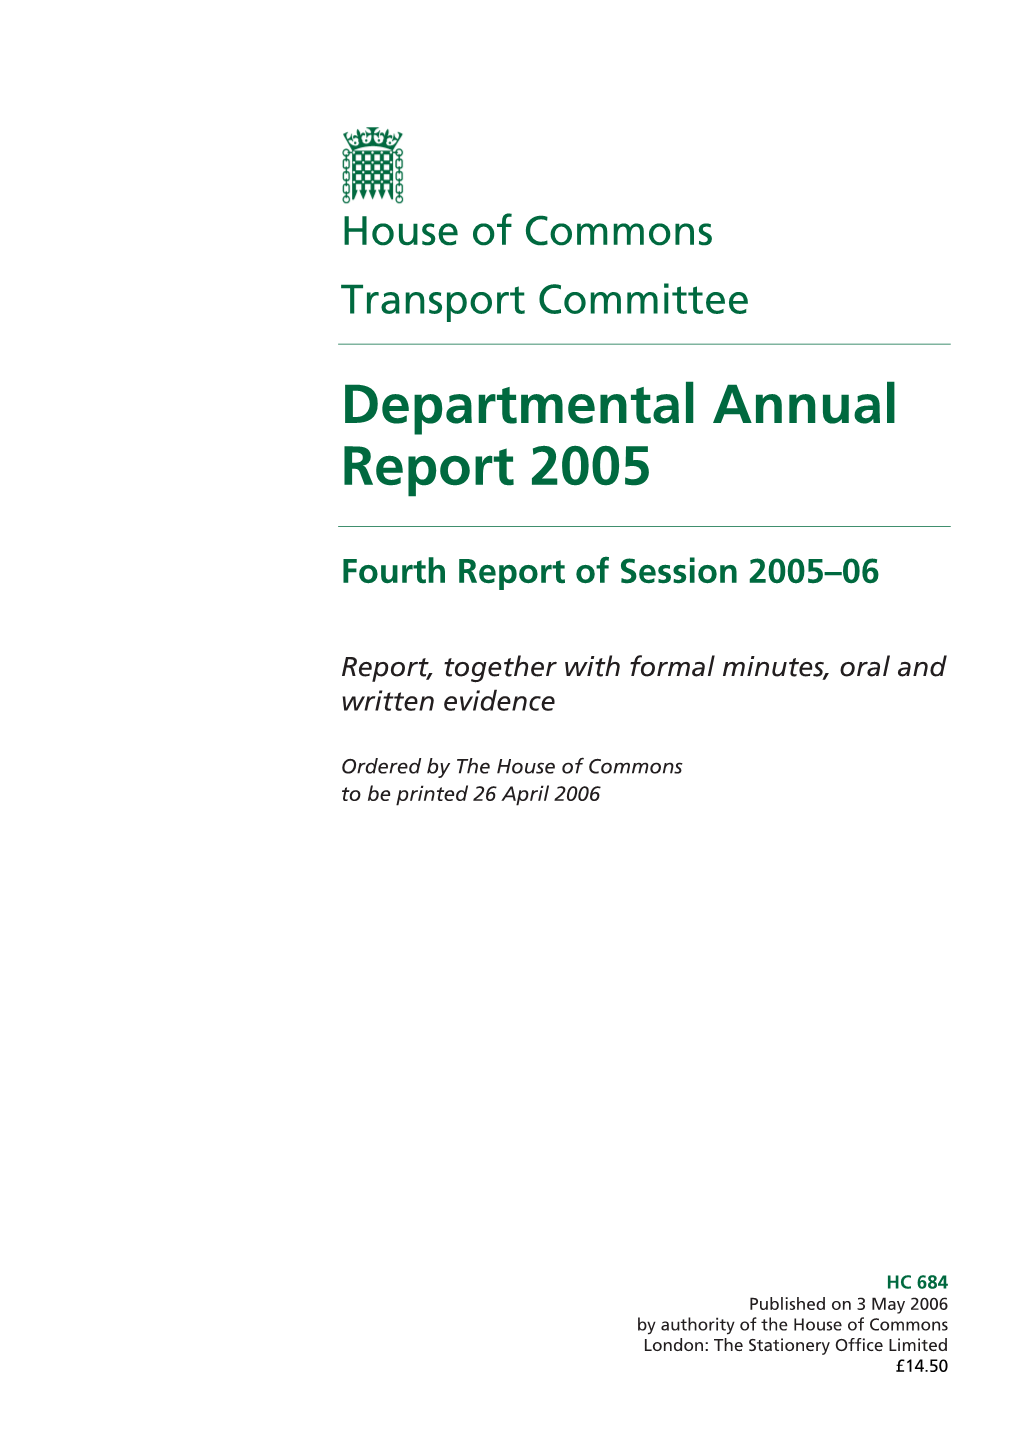 Departmental Annual Report 2005